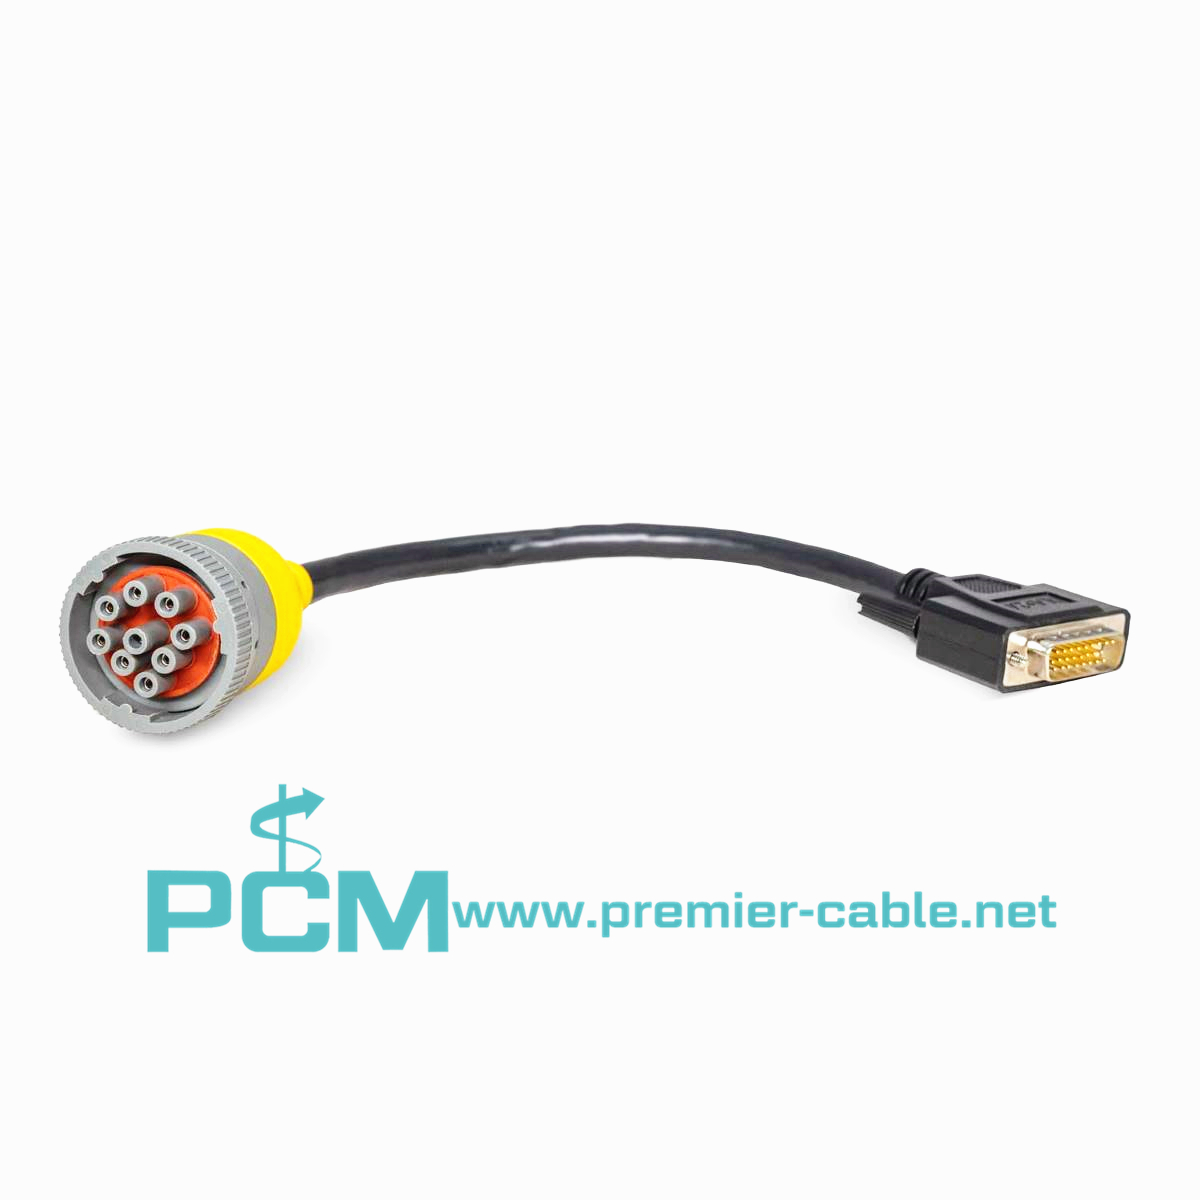 Diagnostic cable for Noregon DLA+ 2.0